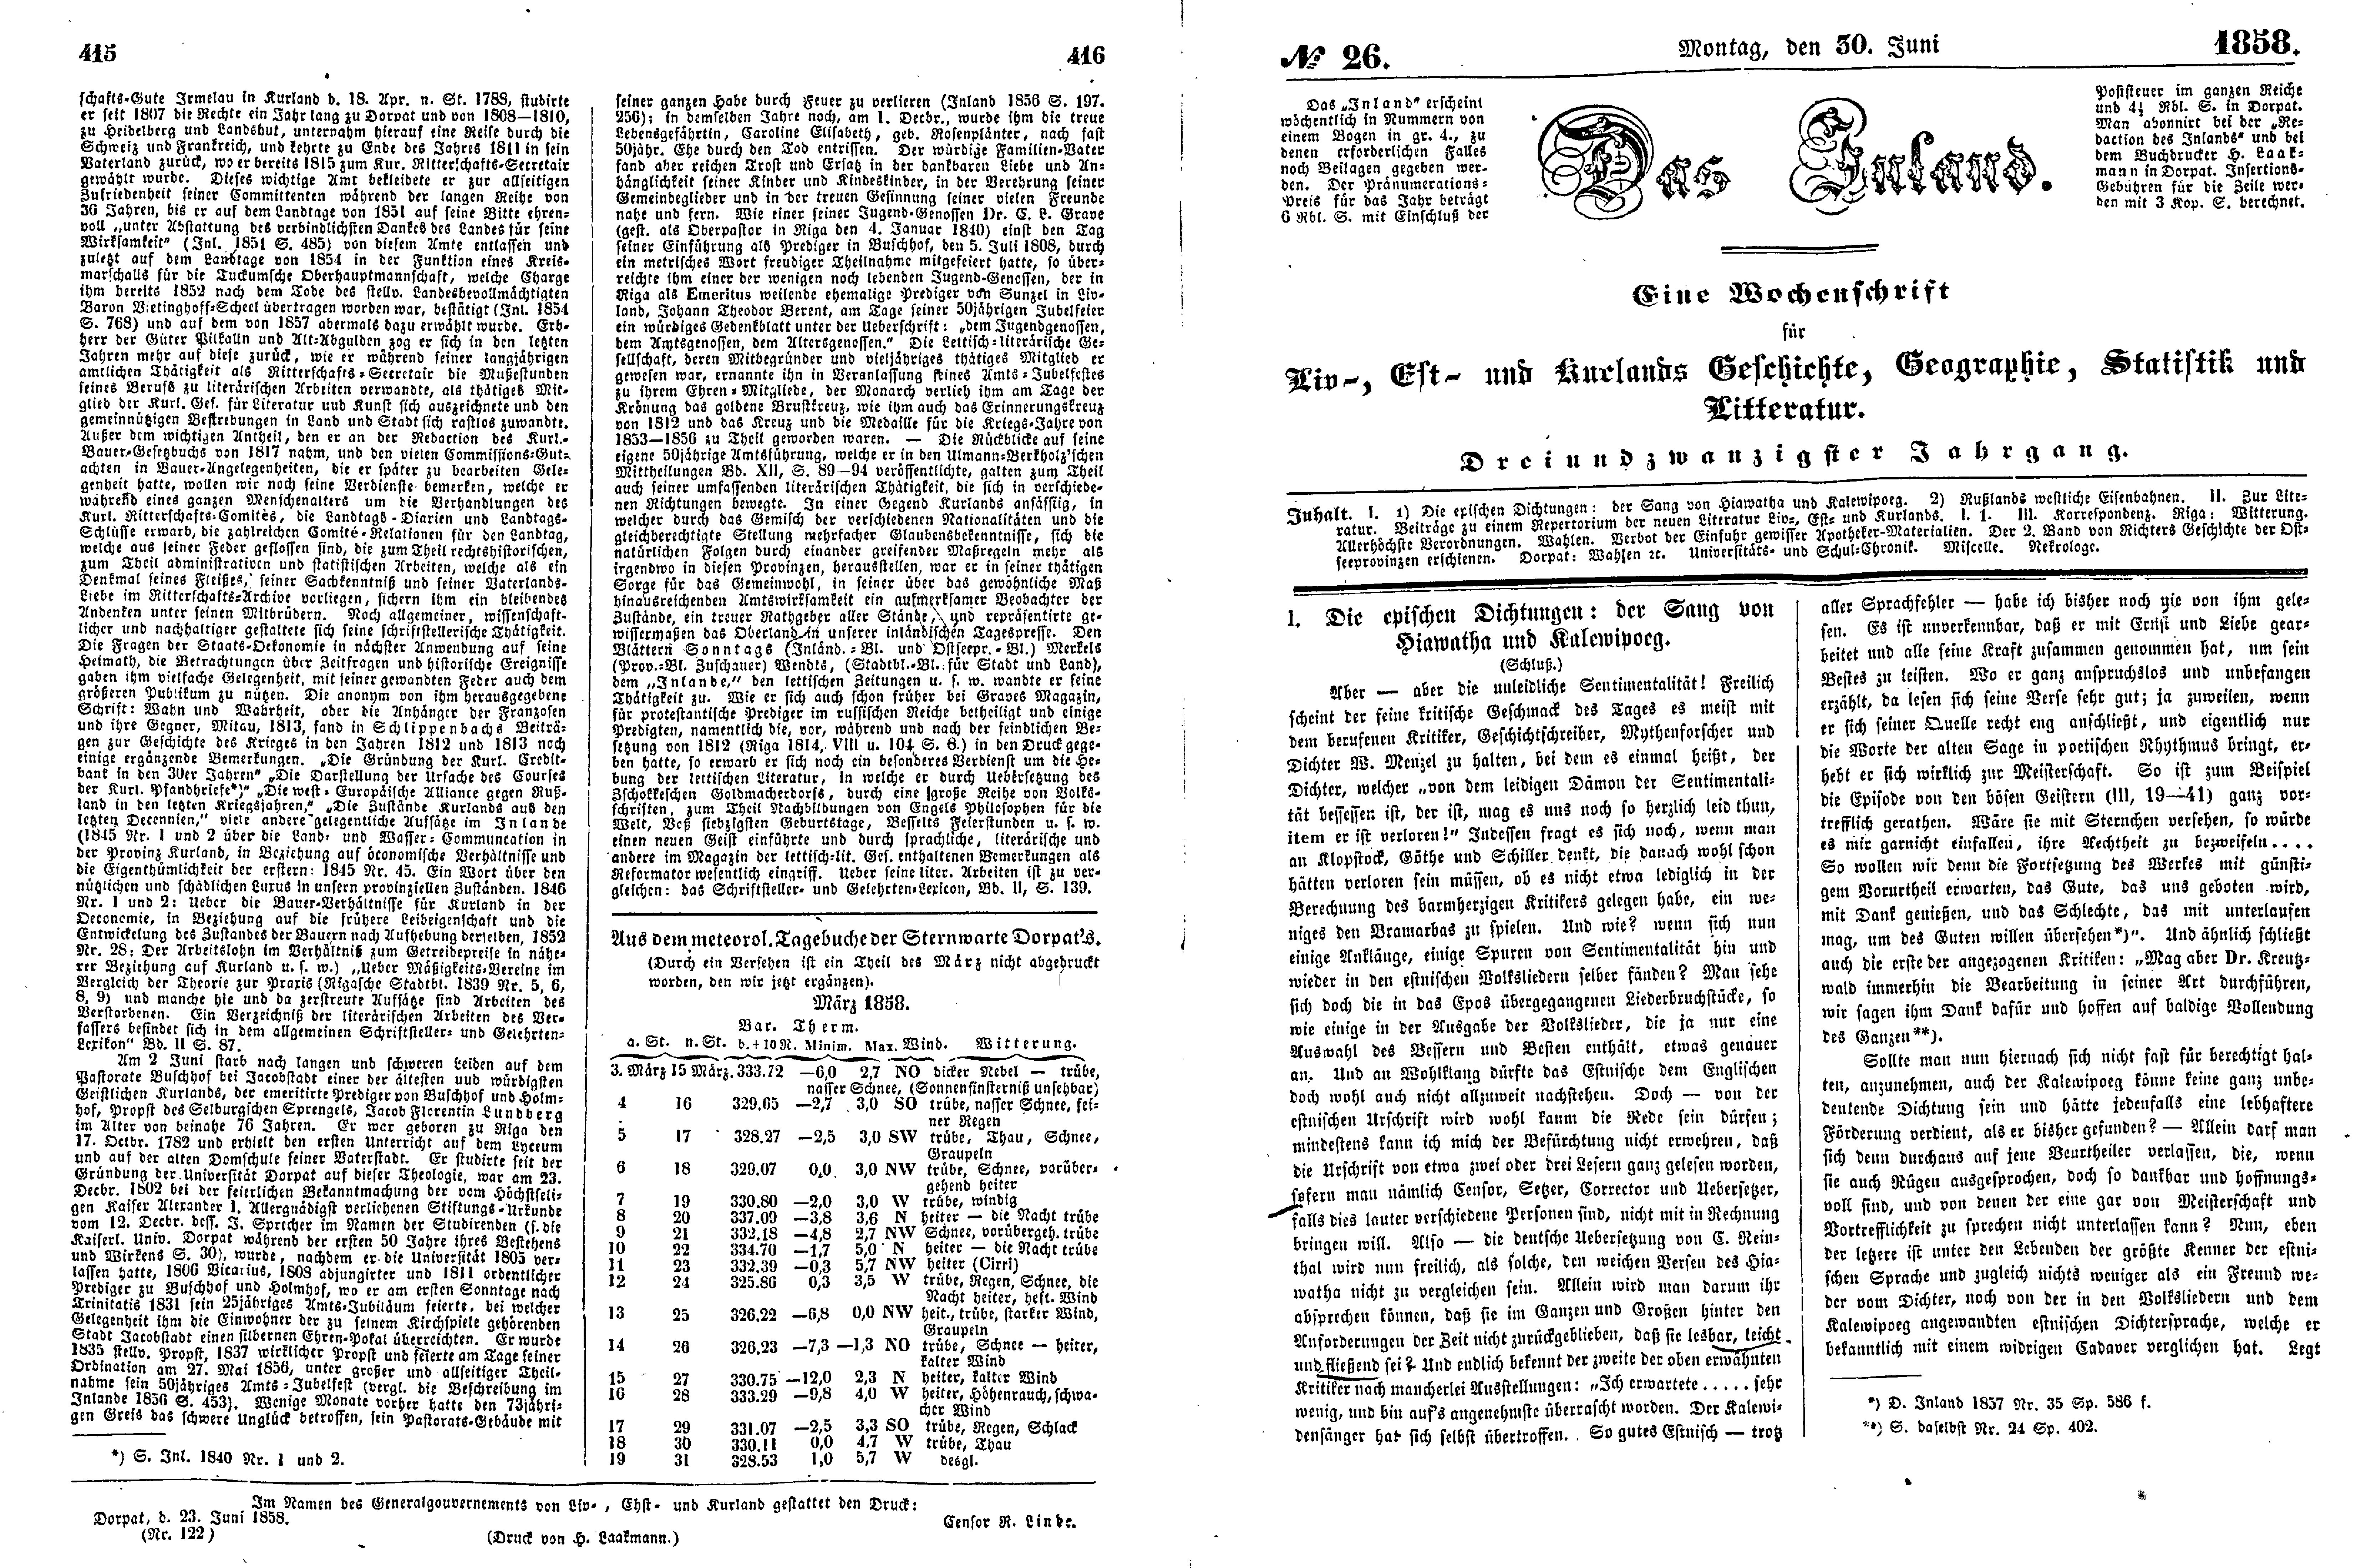 Die epischen Dichtungen: der Sang von Hiawatha und Kalewipoeg [2] (1858) | 1. (415-418) Основной текст